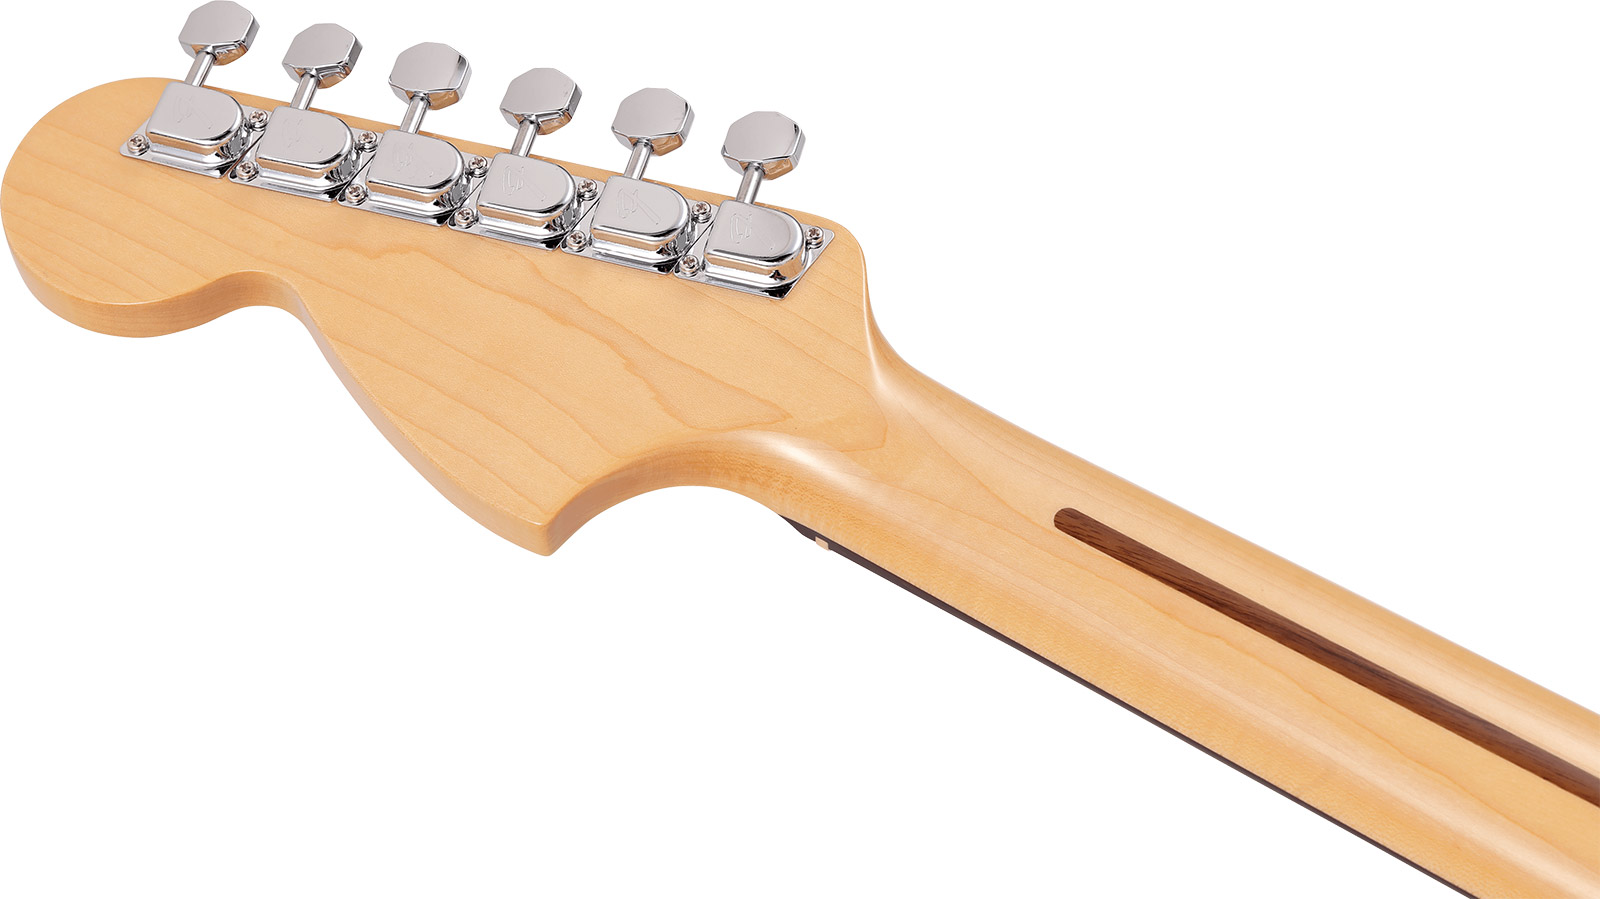 Fender Strat International Color Ltd Jap 3s Trem Rw - Capri Orange - E-Gitarre in Str-Form - Variation 3